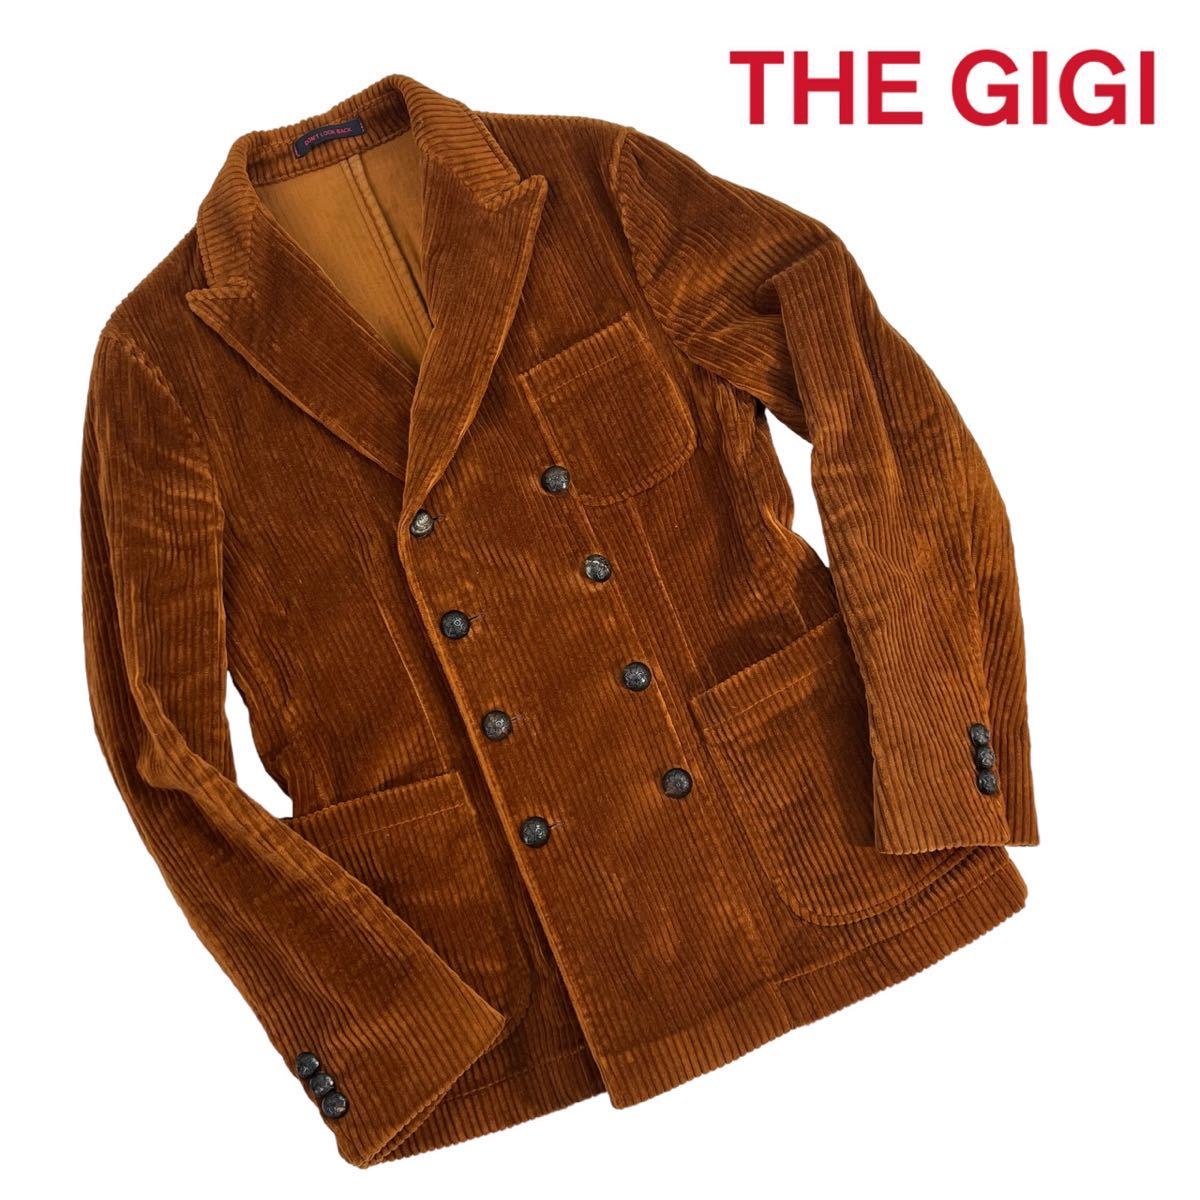 定価10.5万+税 極美品 THE GIGI ザ ジジ ダブルプレストジャケット サイズ46/M相当 太畝コーデュロイ ブラウン メタル釦 イタリア製 A3090